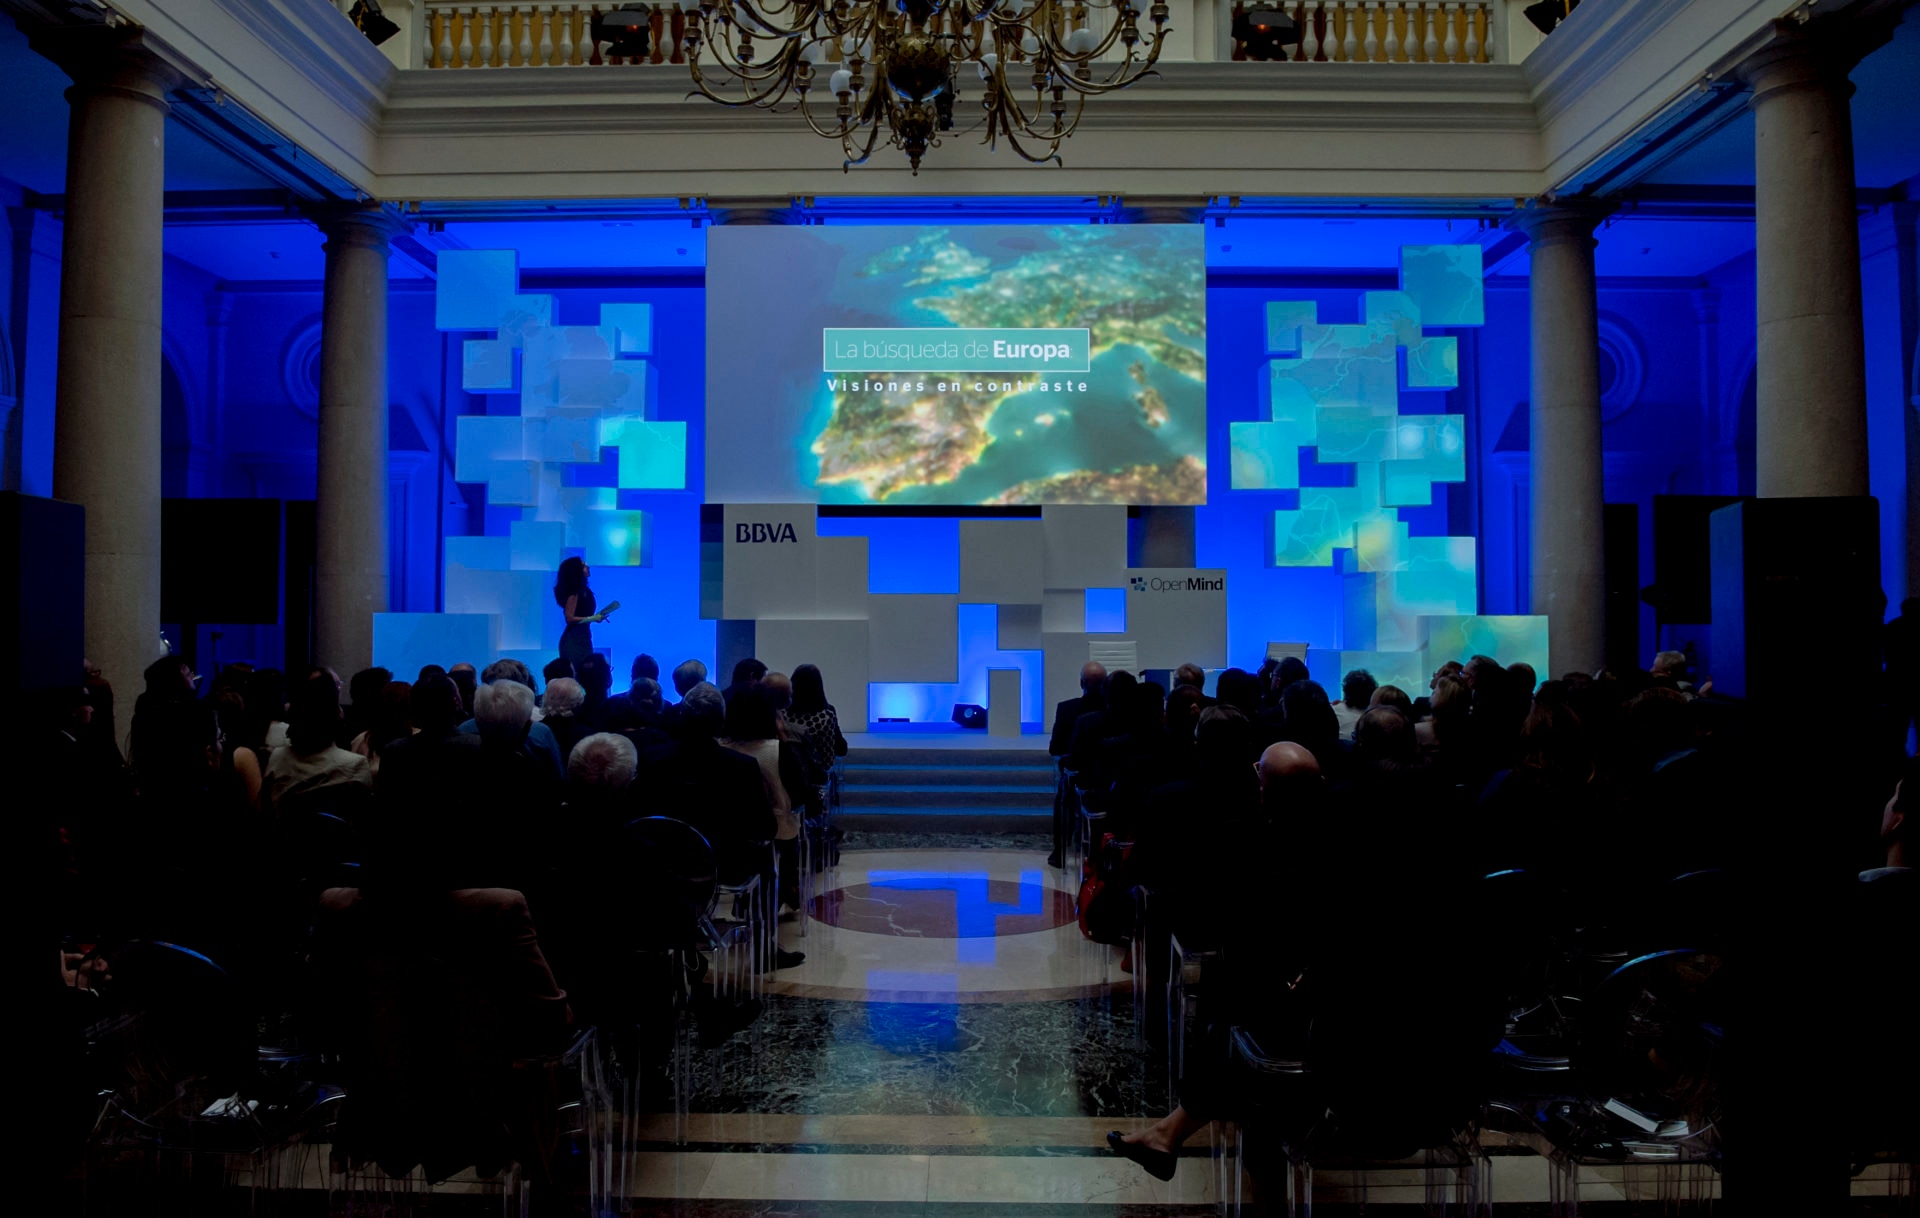 Fotografía de la Presentación del libro La búsqueda de Europa de OpenMind BBVA en el Palacio del Marqués de Salamanca